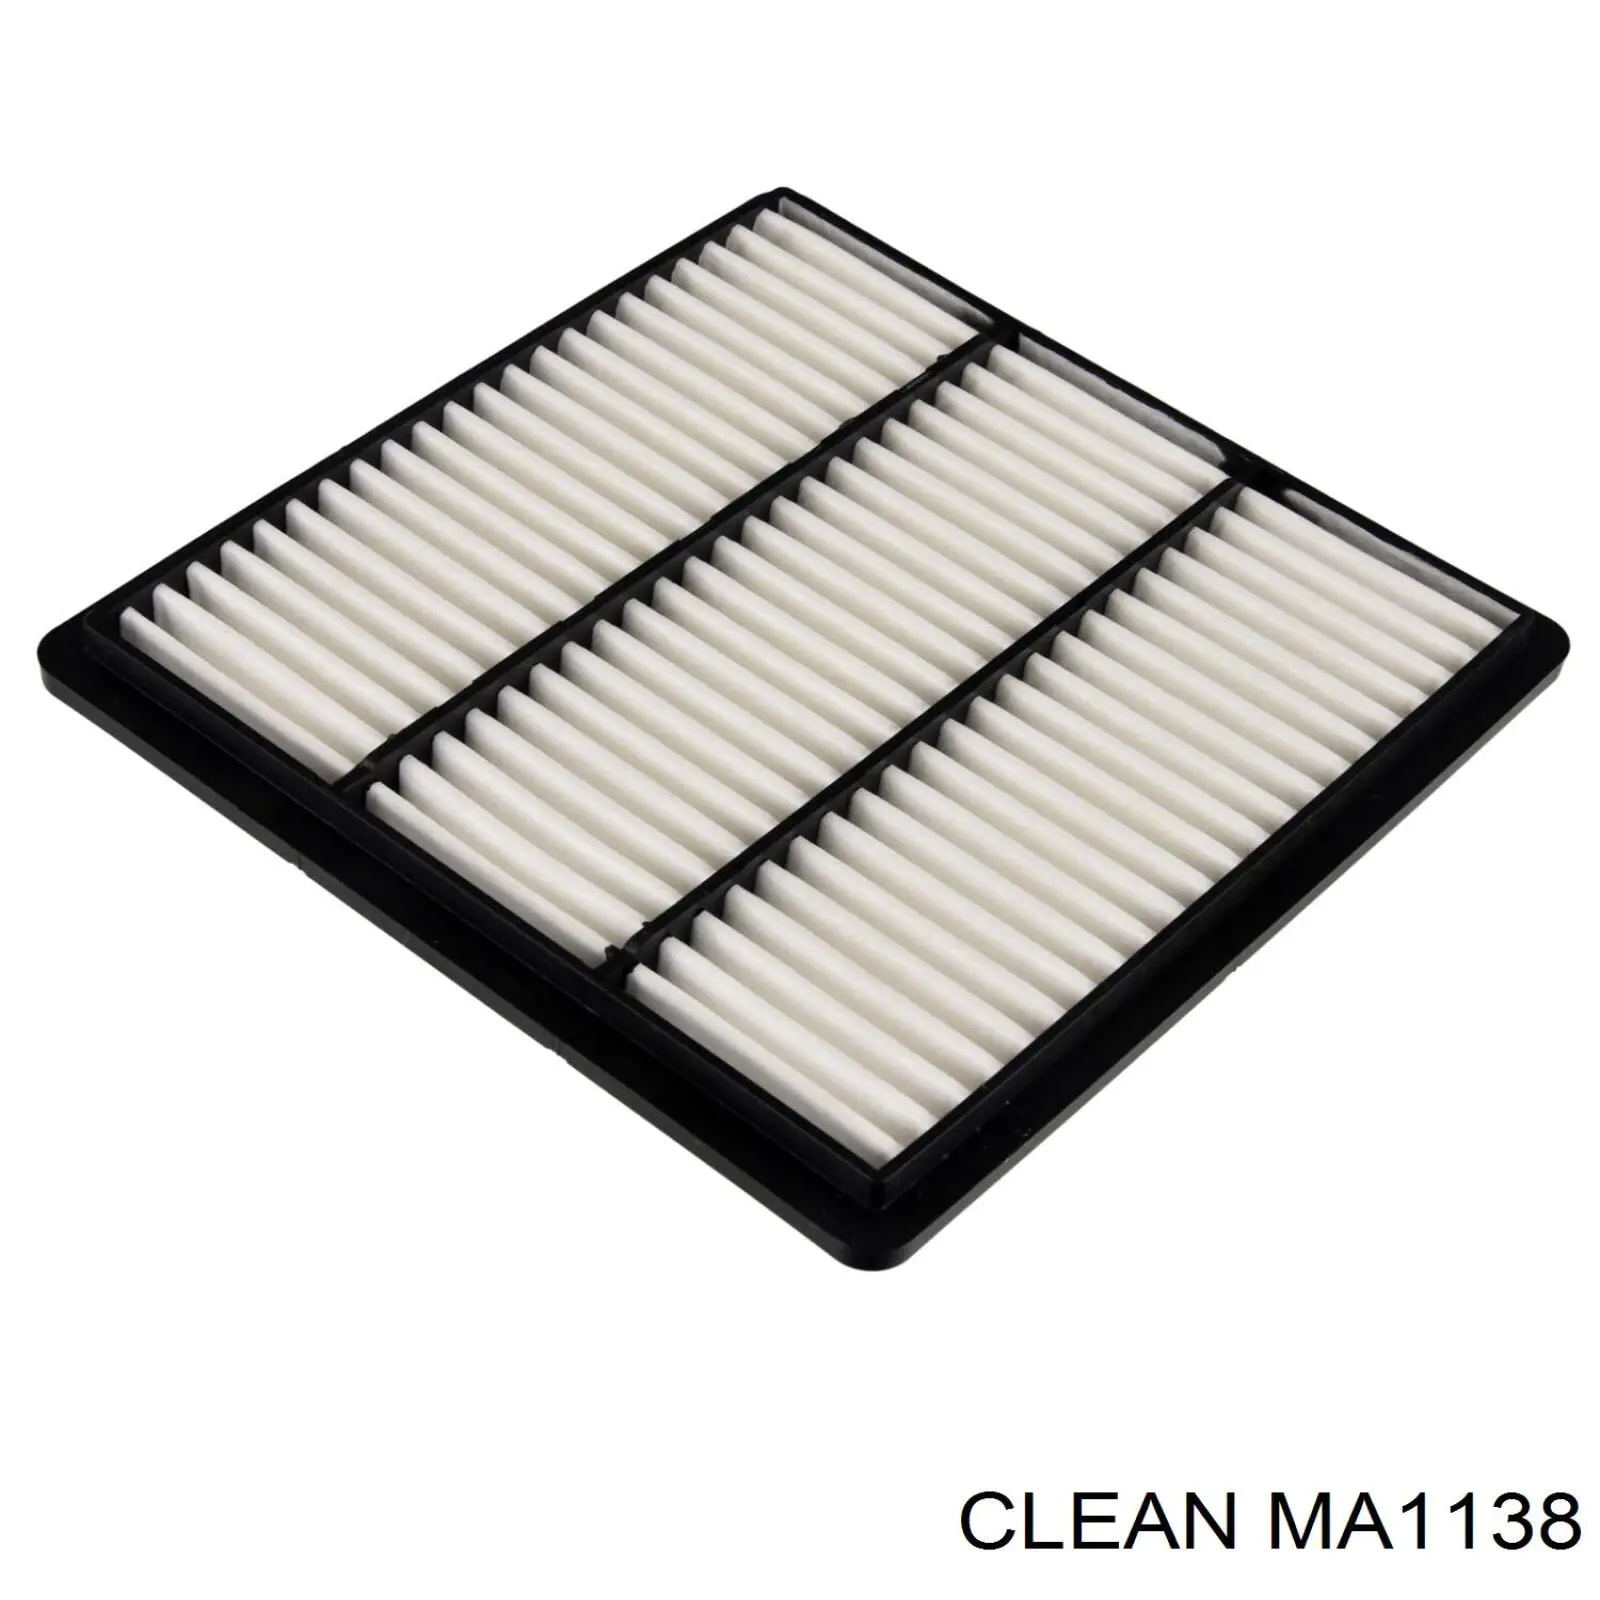 MA1138 Clean filtro de aire